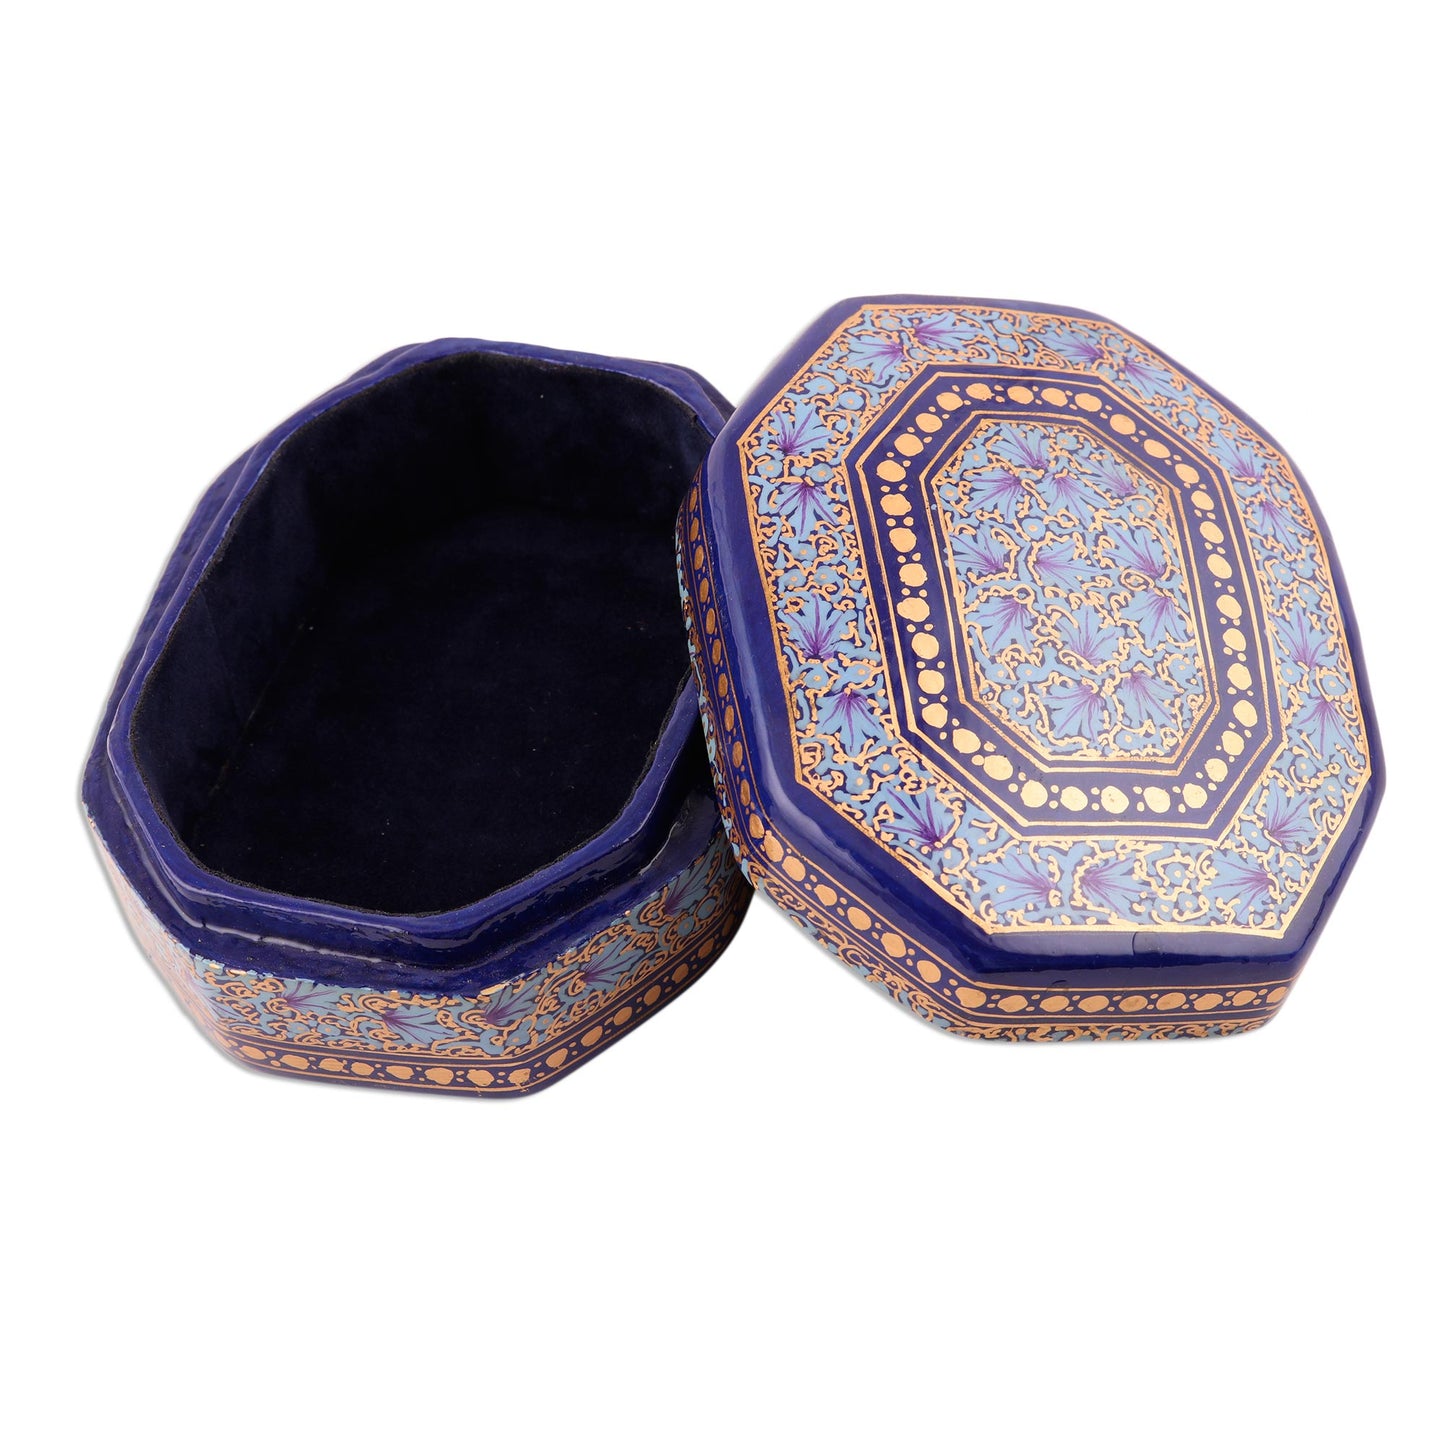 Kashmir Royal Elegant Hand Painted Blue and Gold Papier Mache Box